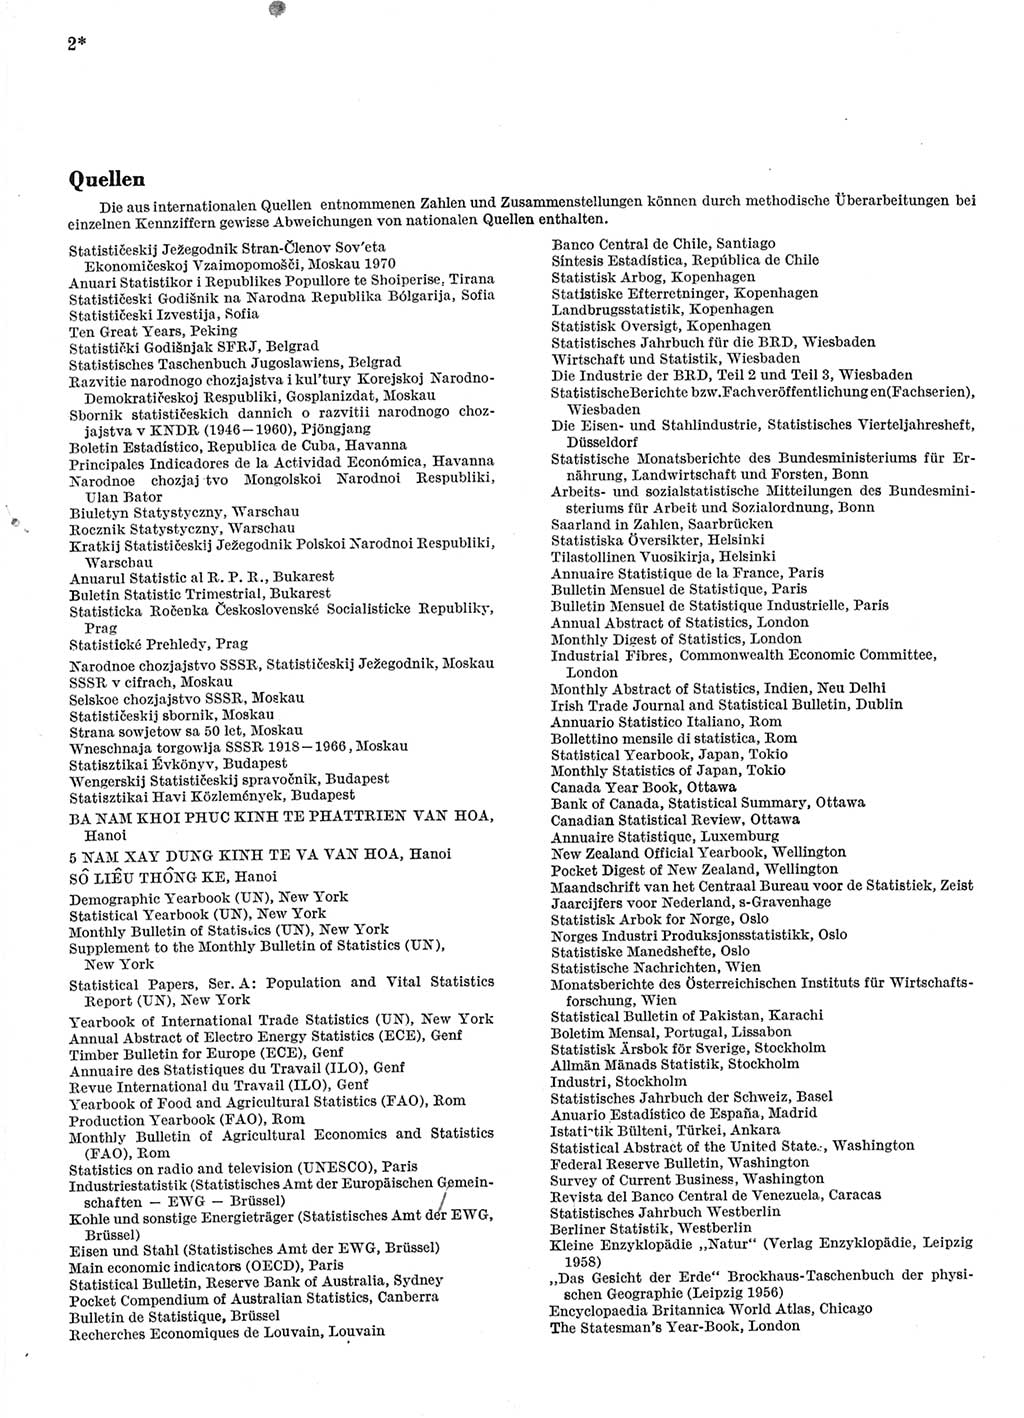 Statistisches Jahrbuch der Deutschen Demokratischen Republik (DDR) 1971, Seite 2 (Stat. Jb. DDR 1971, S. 2)